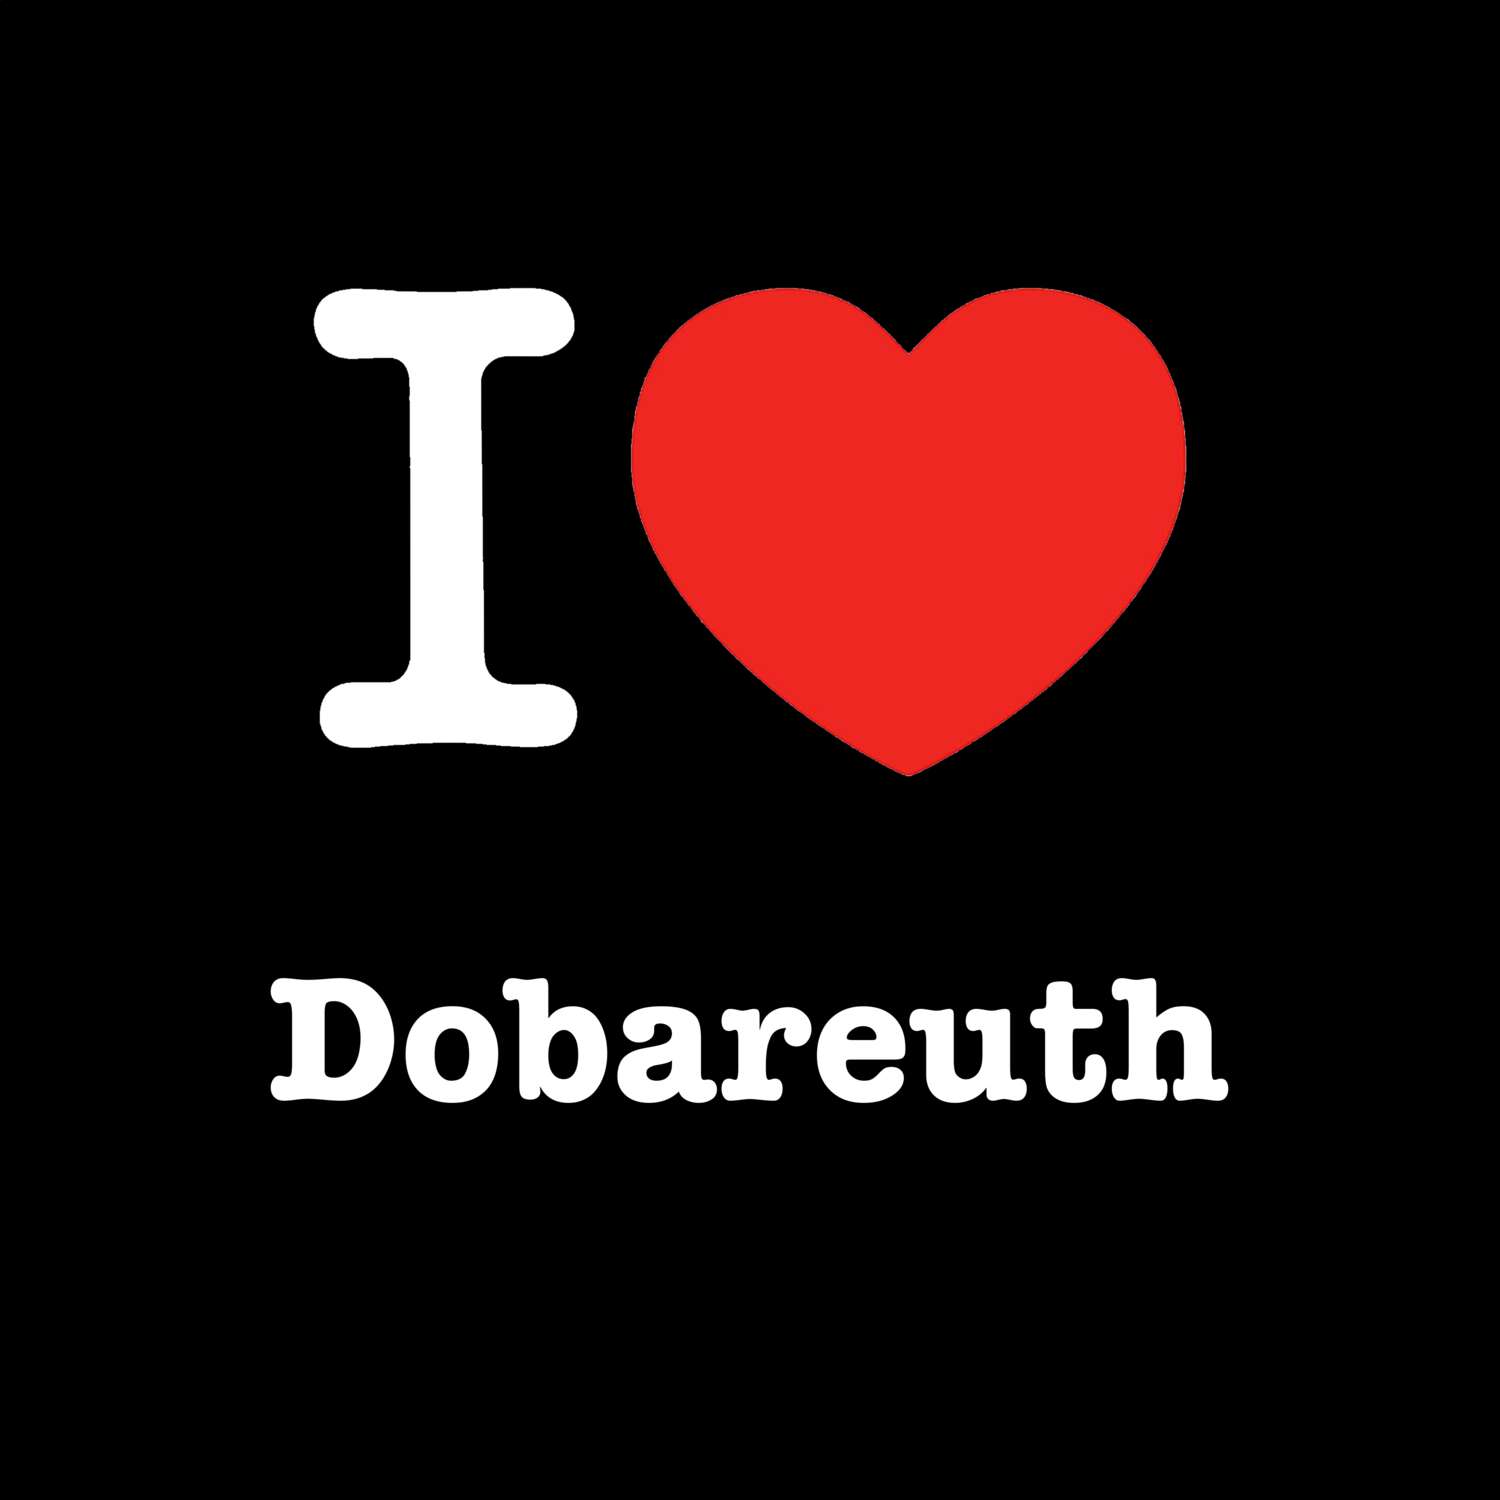 Dobareuth T-Shirt »I love«